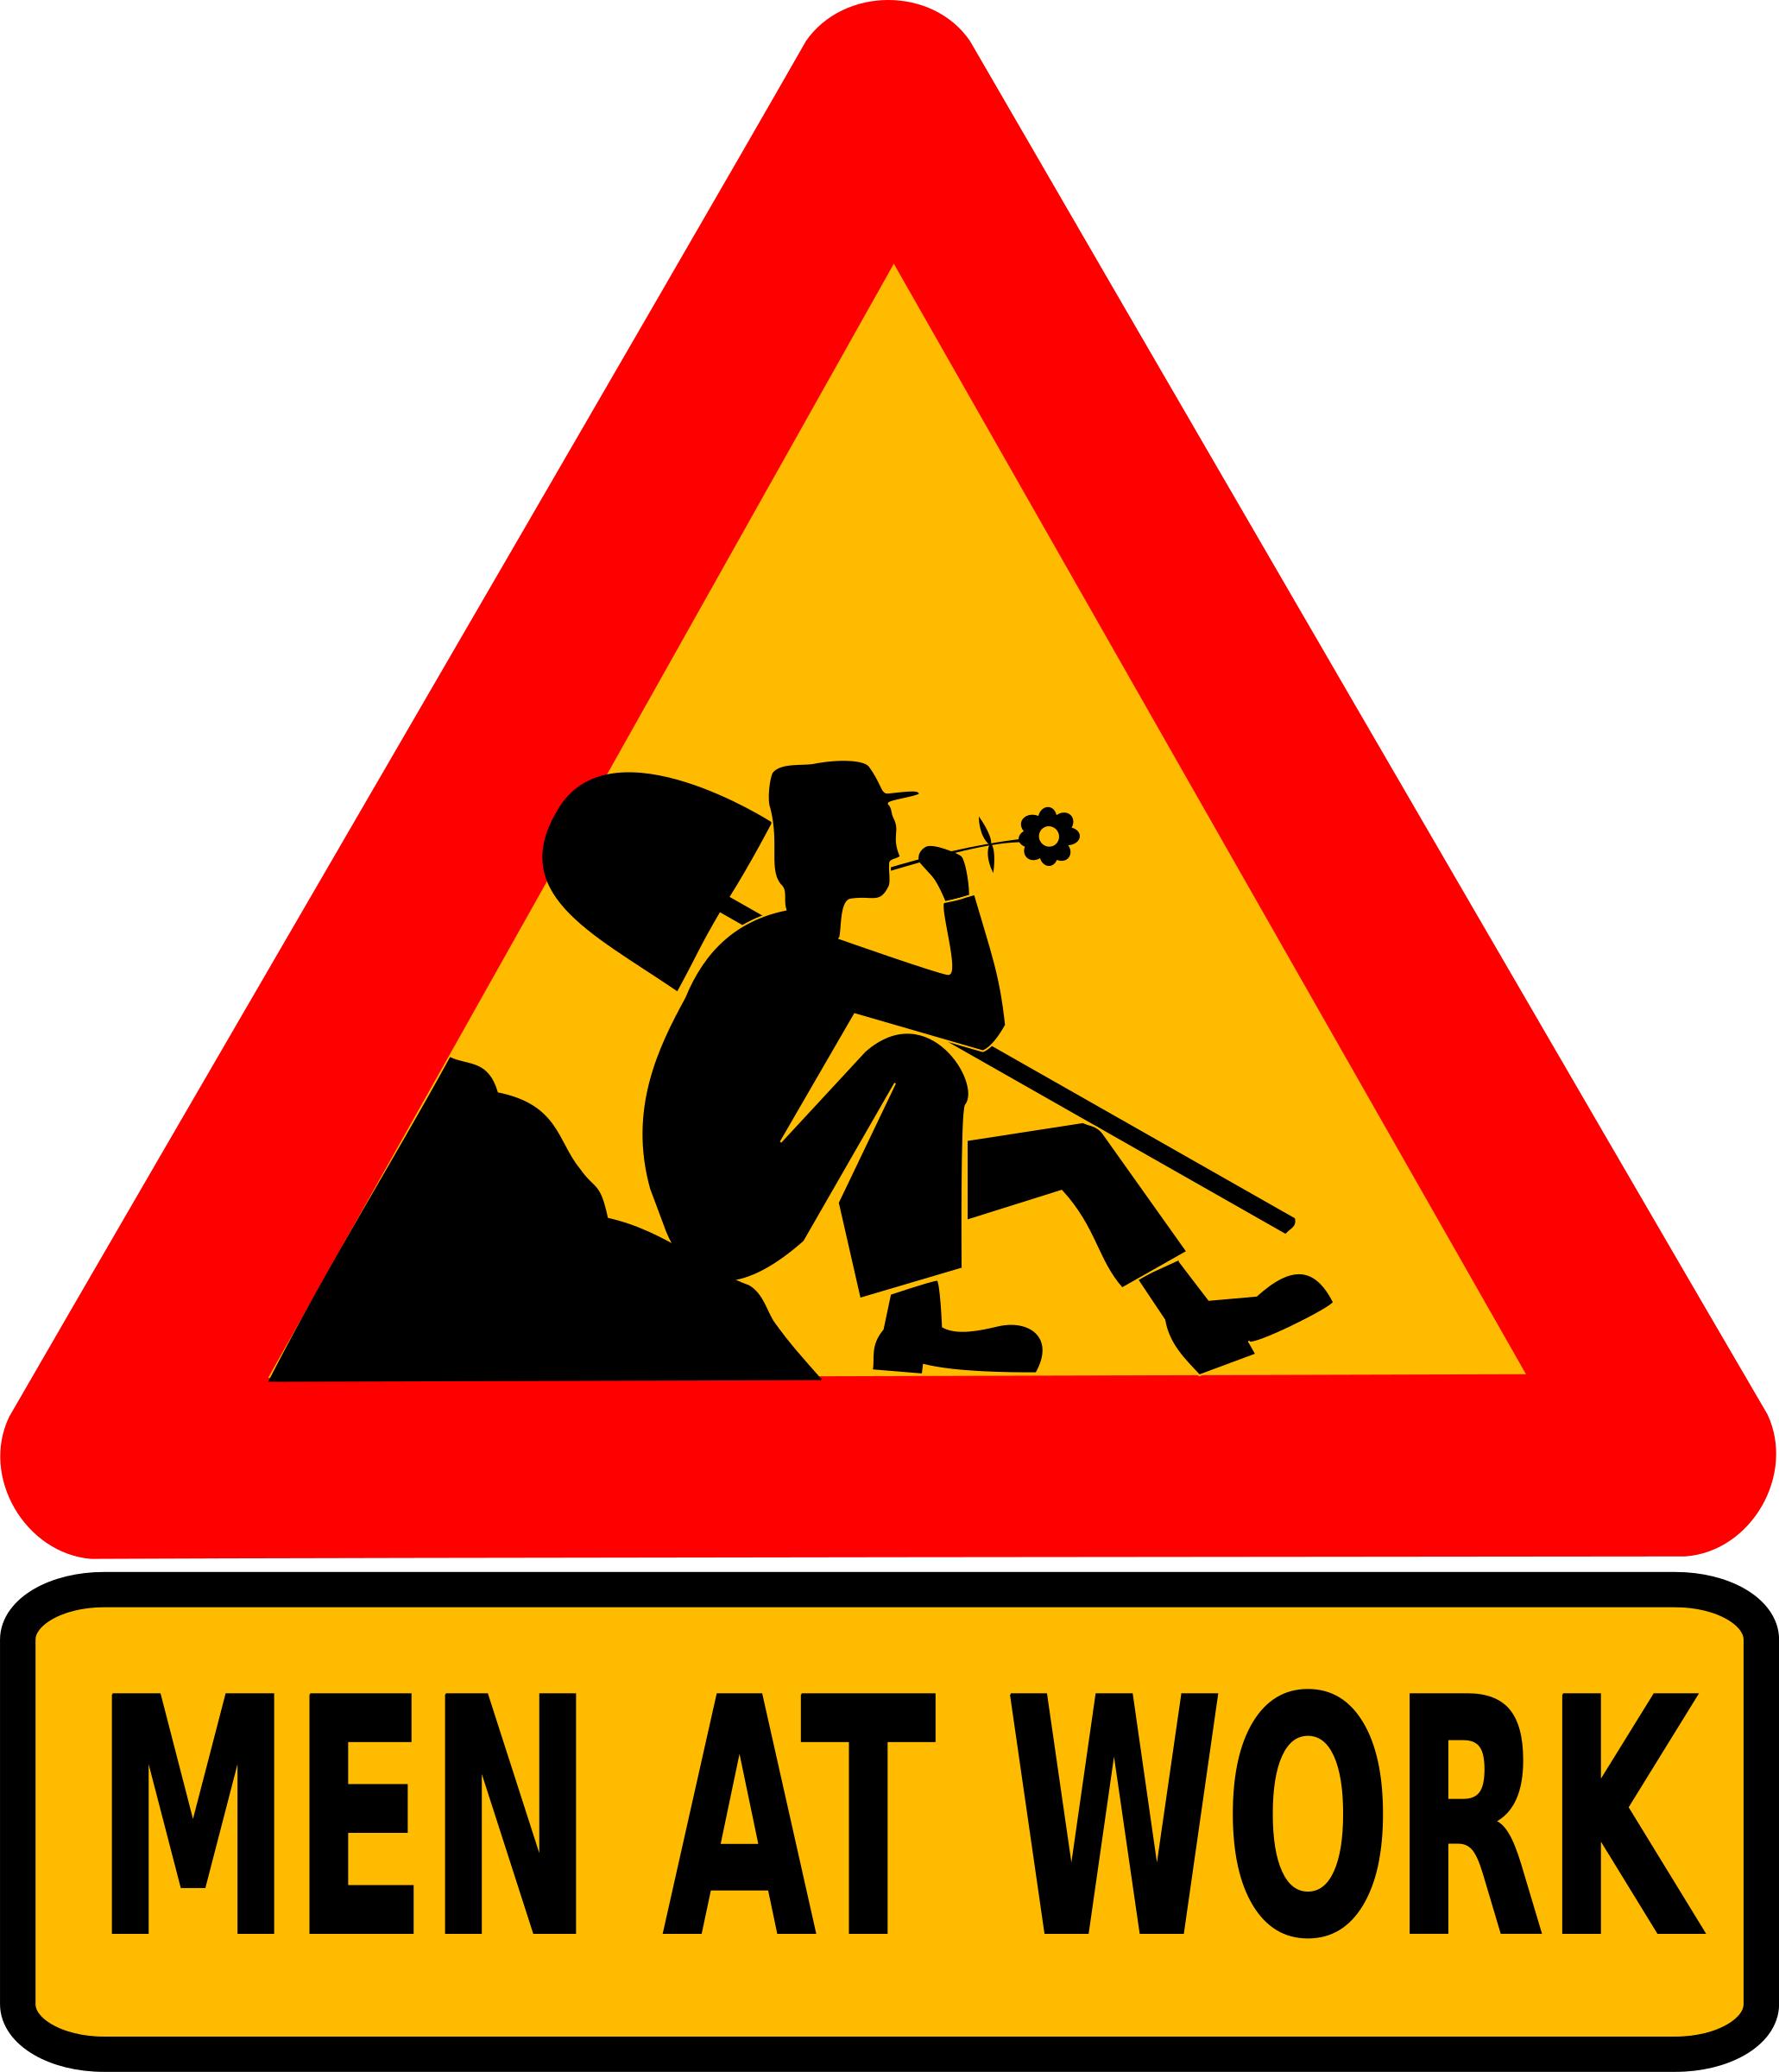 Men at work png